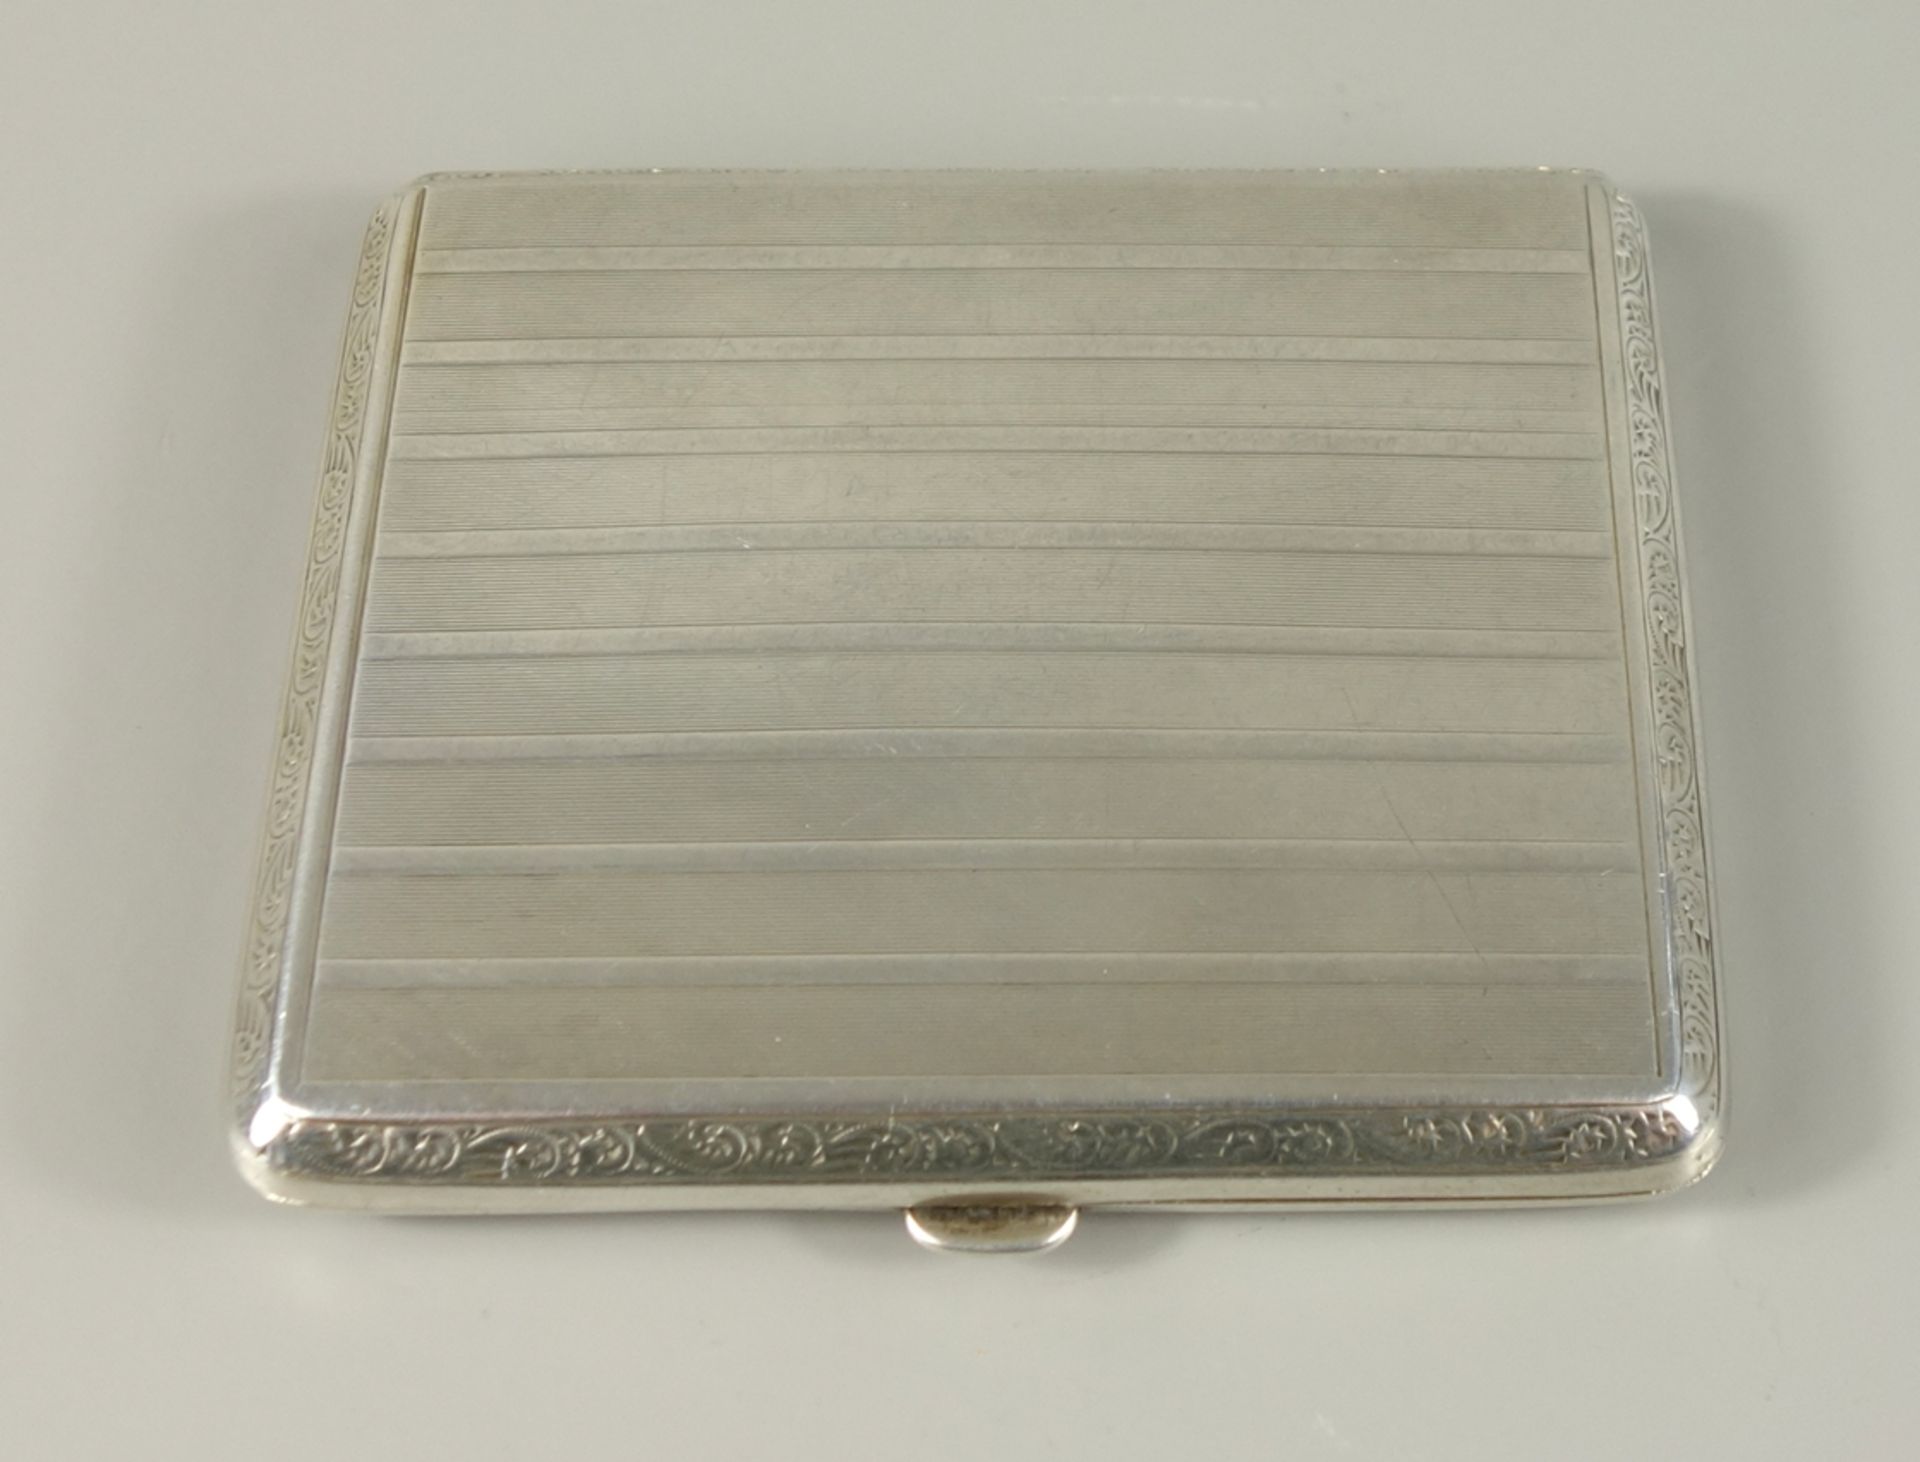 Zigarettenetui, 1930er Jahre, 800er Silber, scharniert mit Streifendekor, innen vergoldet und